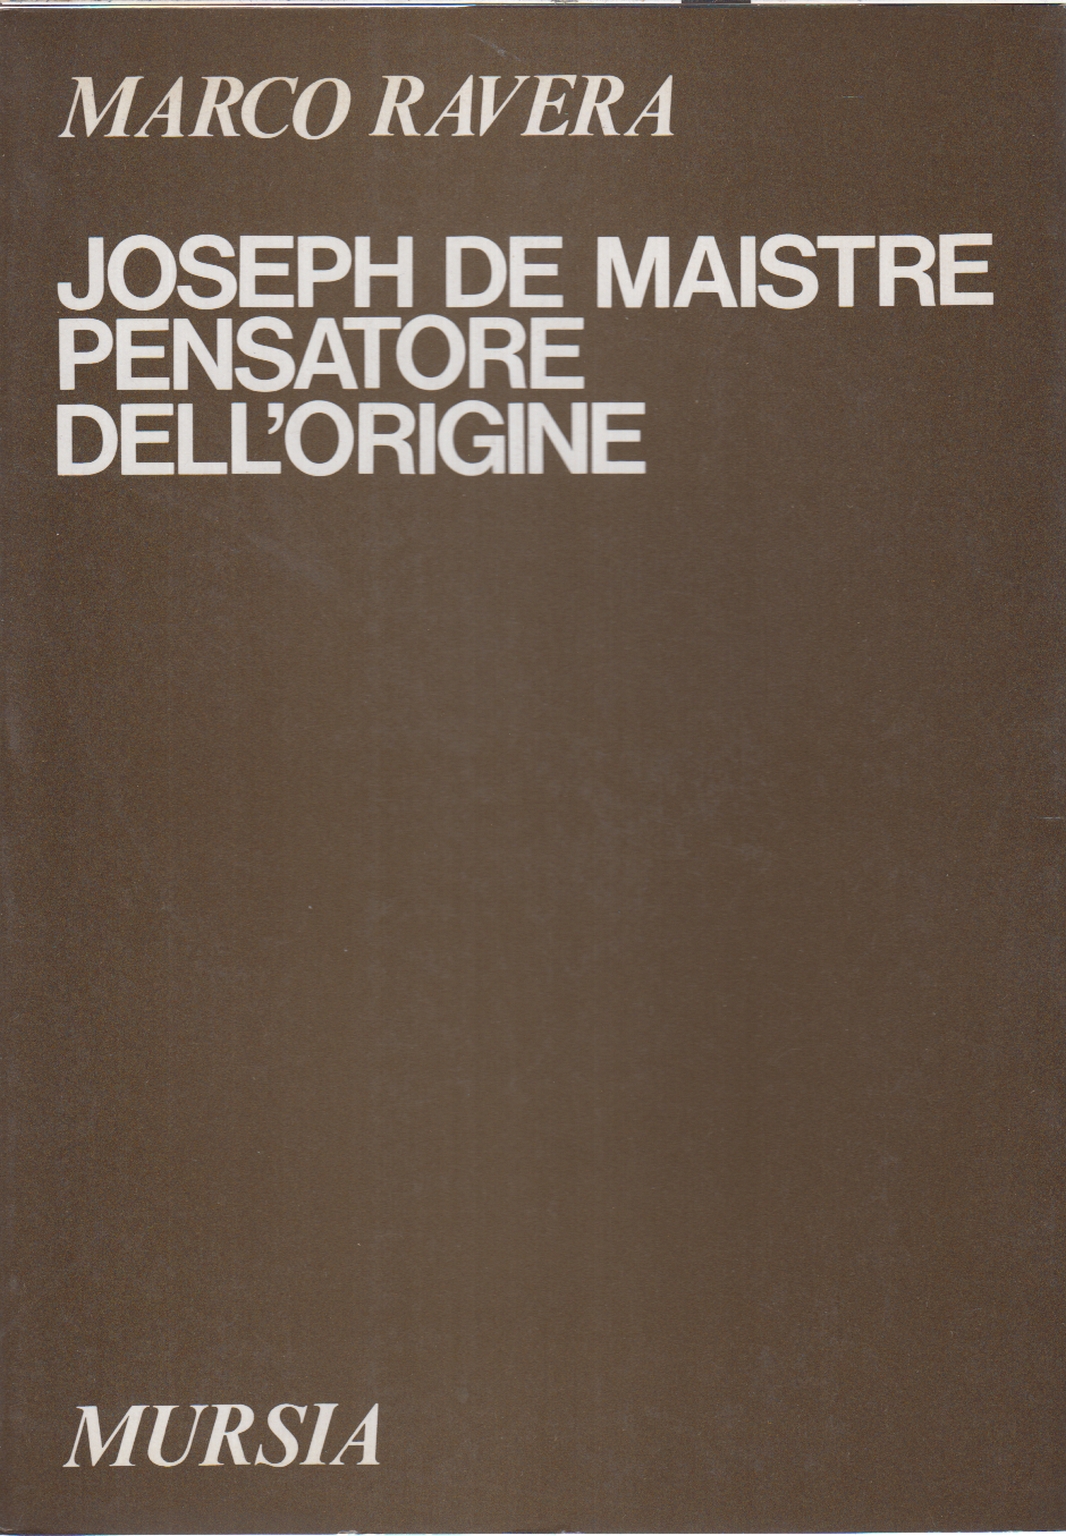 Joseph de Maistre pensatore dell0apostroph